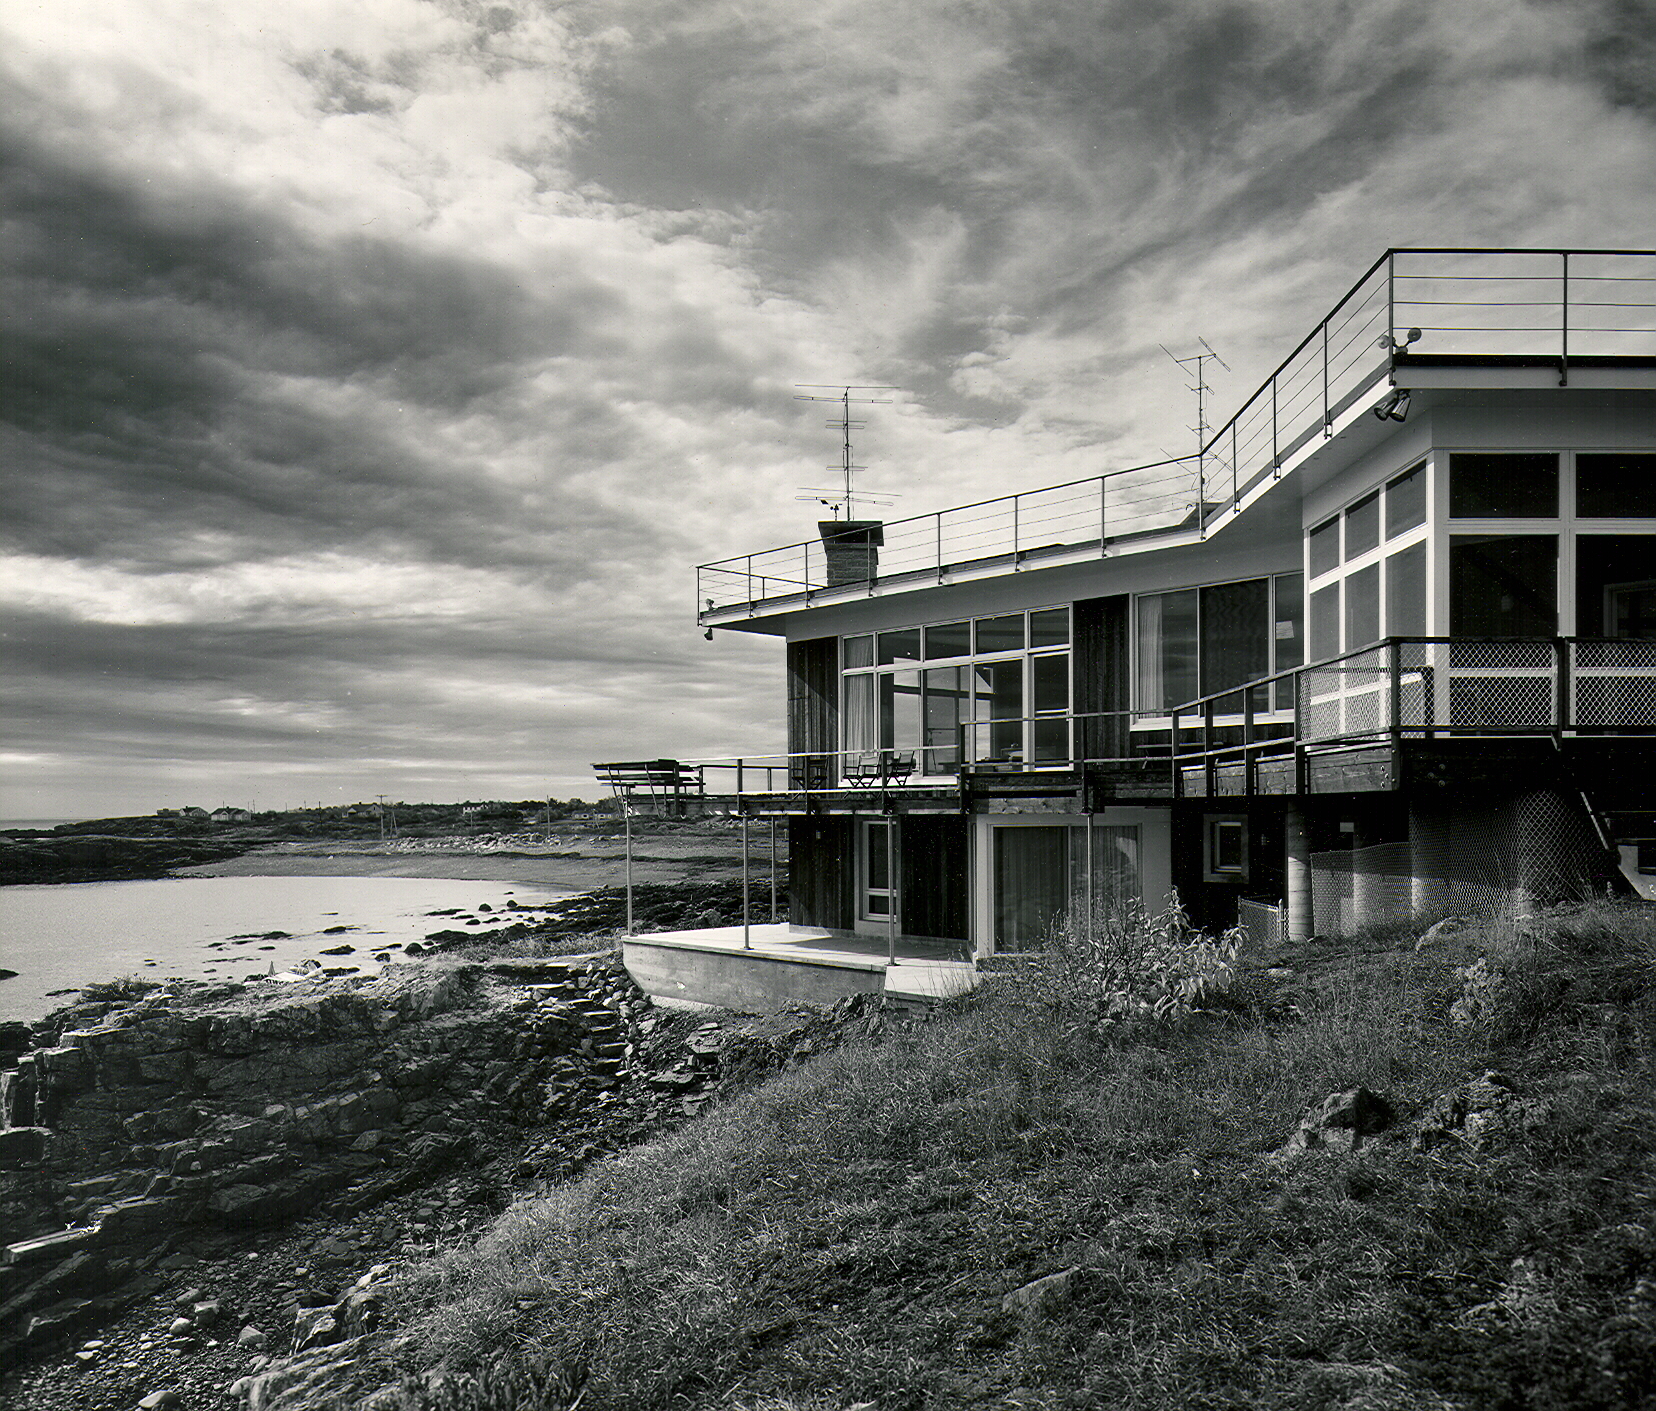  publication photograph of original home 